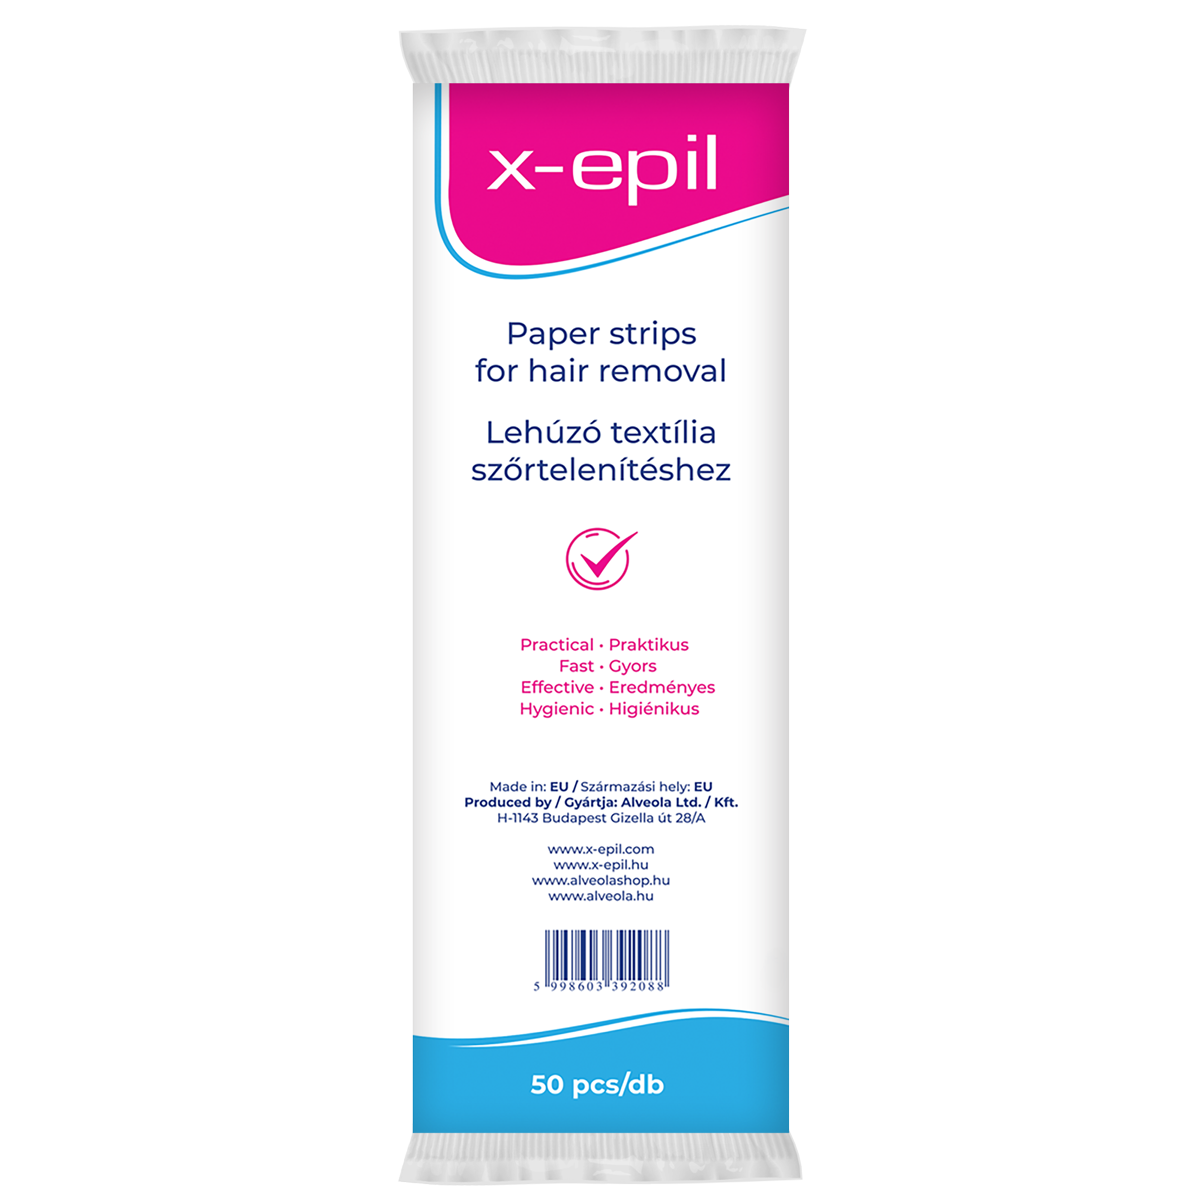 X-epil Hair Removal Strips 50 pcs